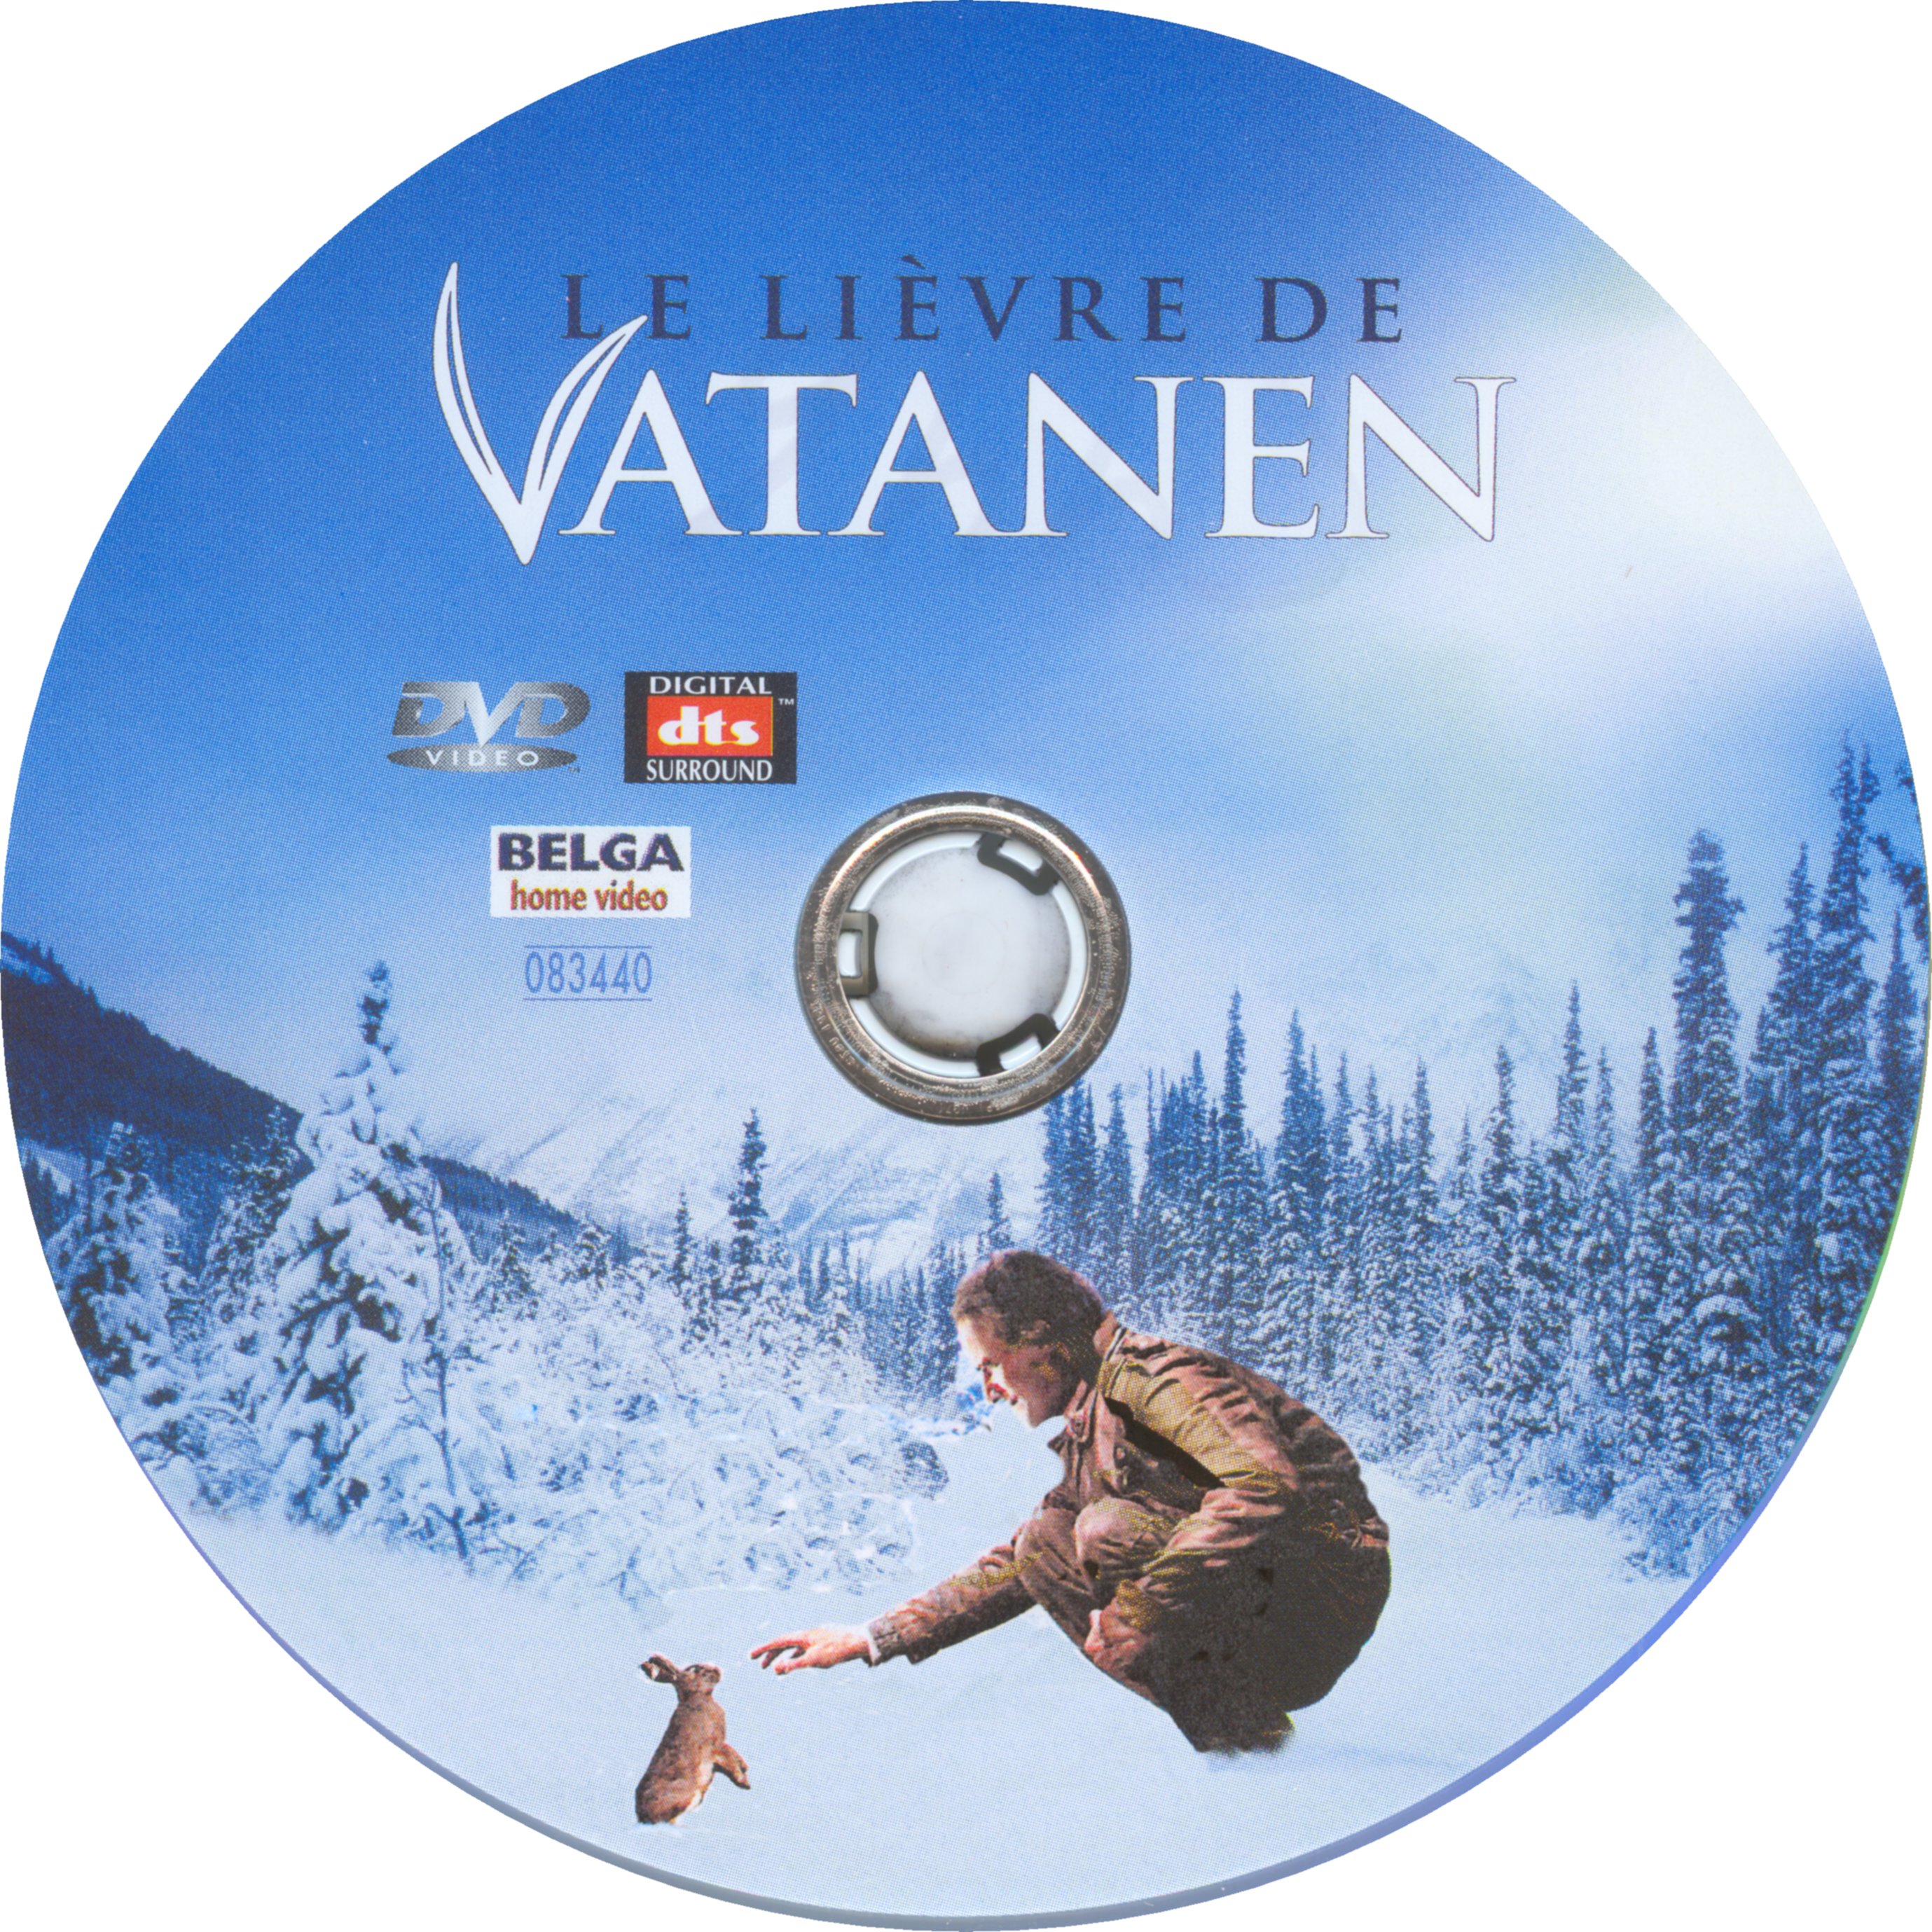 Le livre de Vatanen